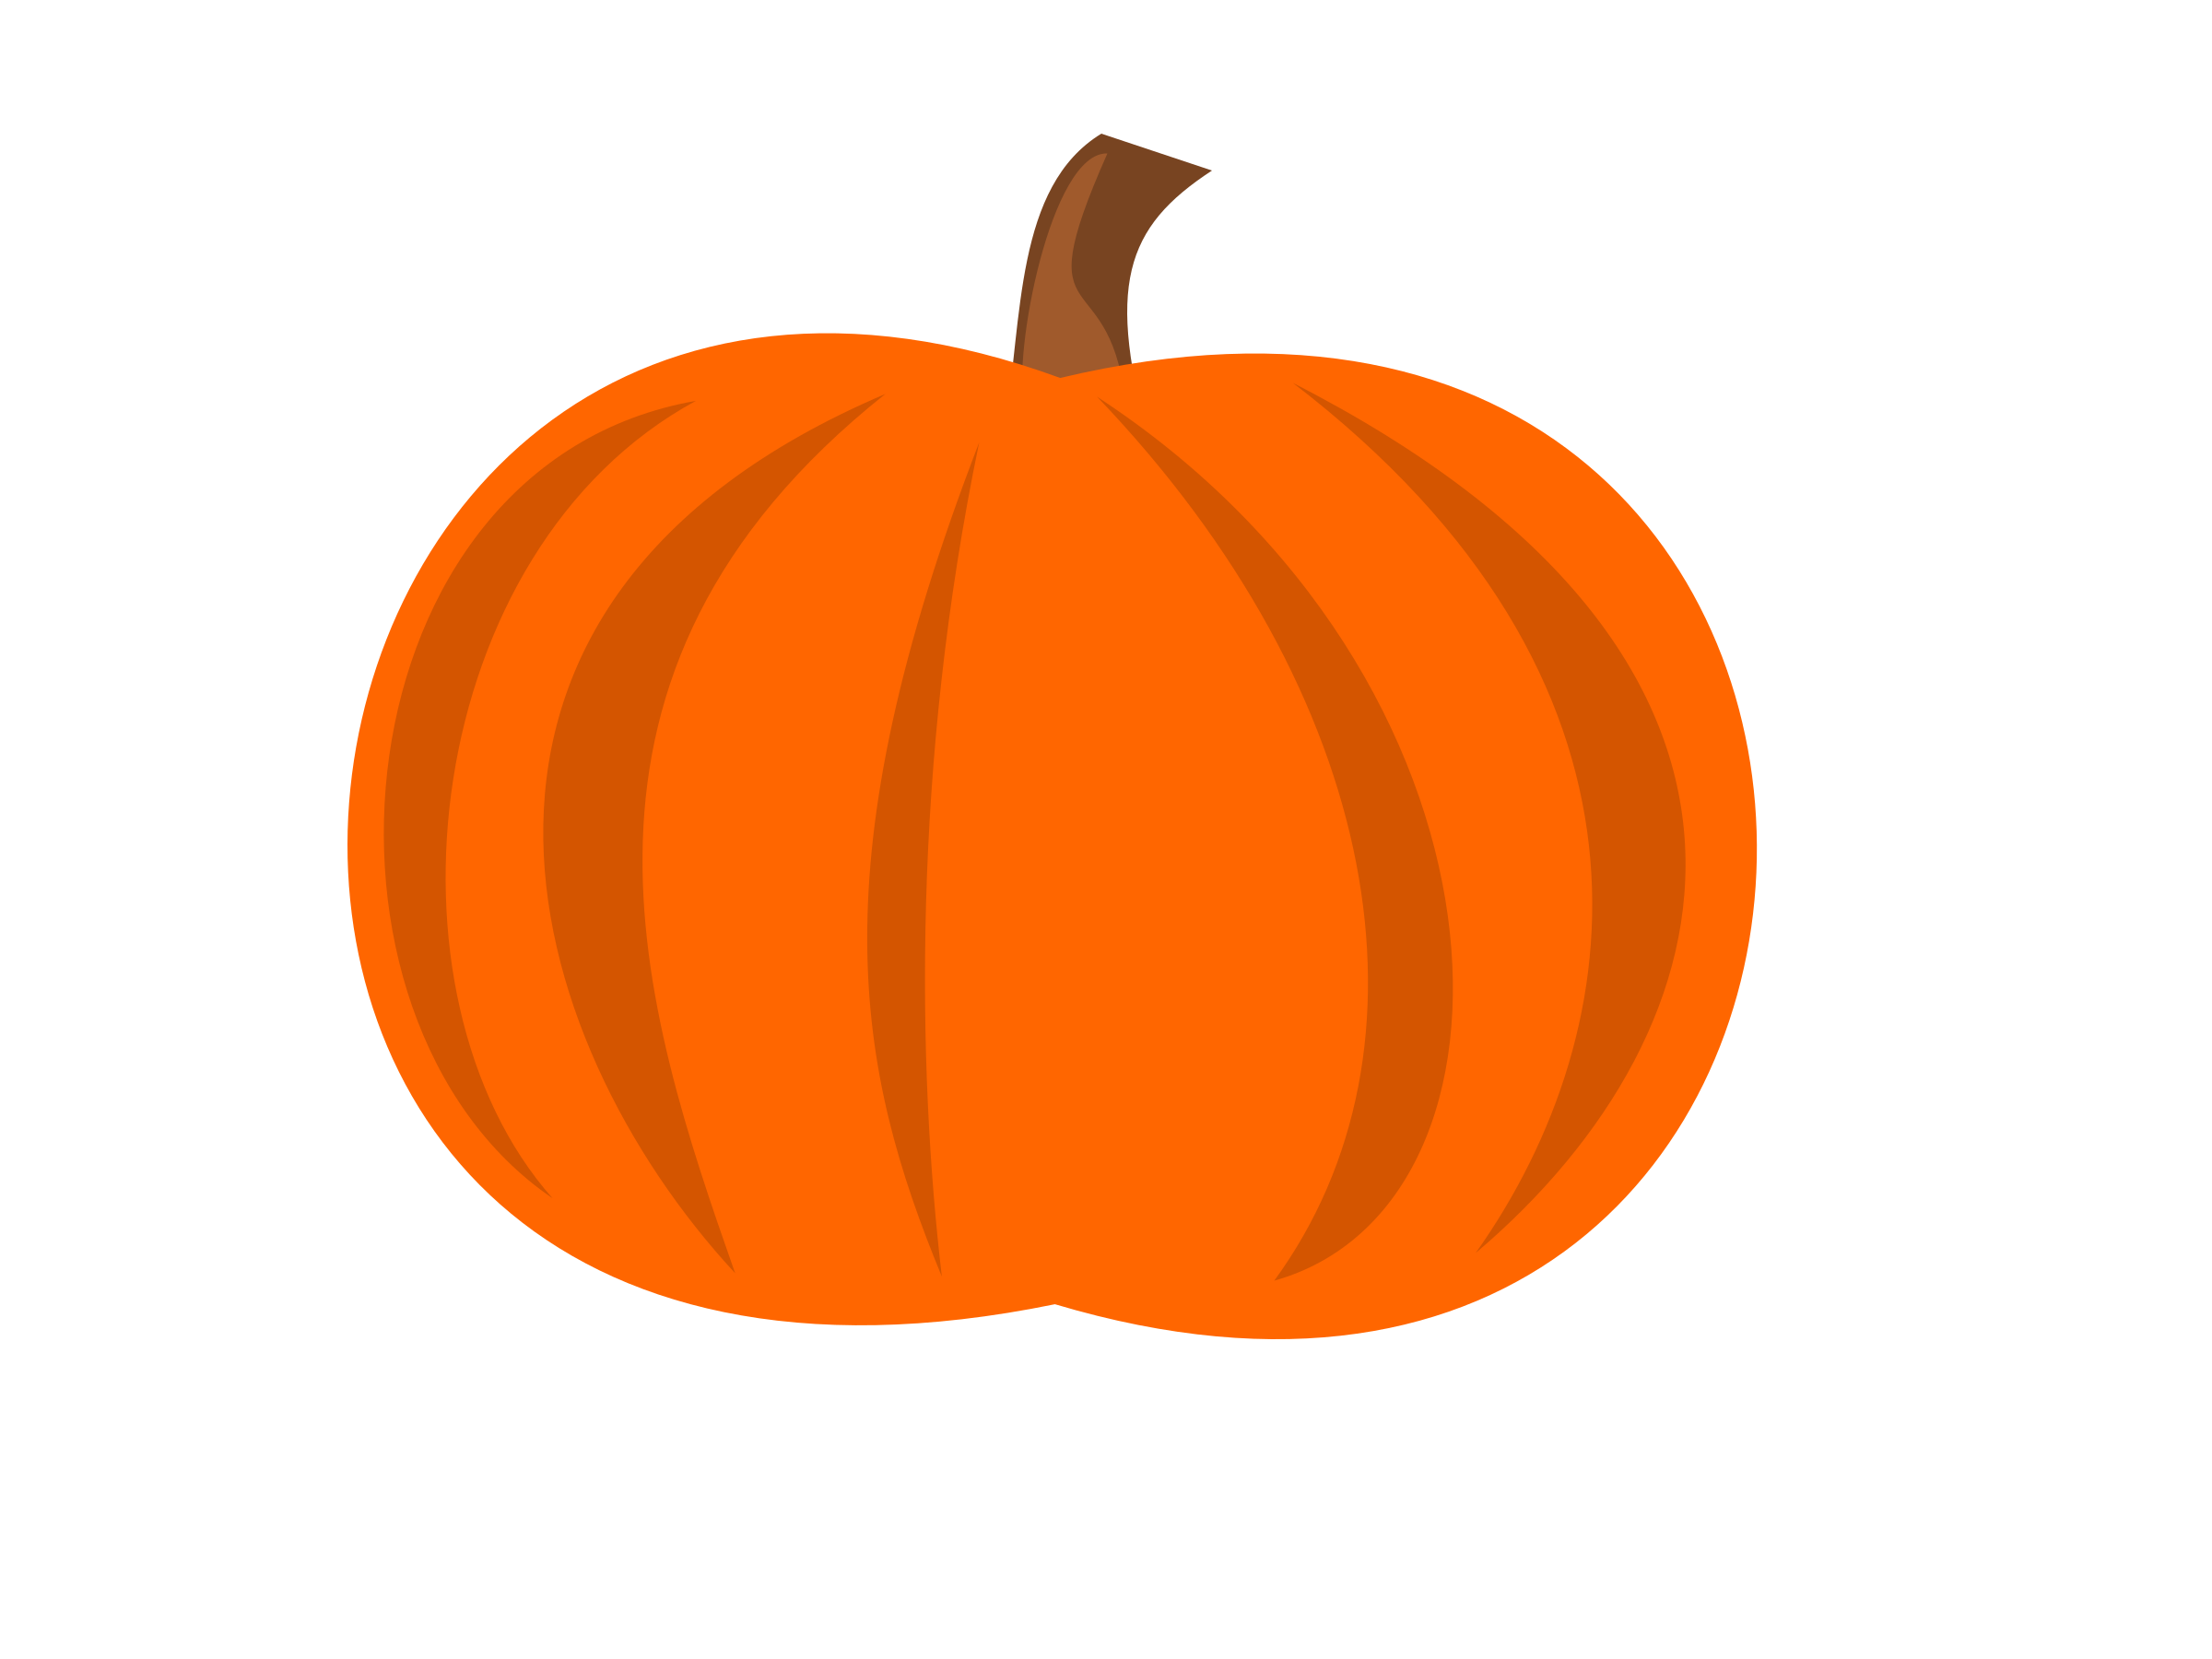 Pumpkin clipart 2